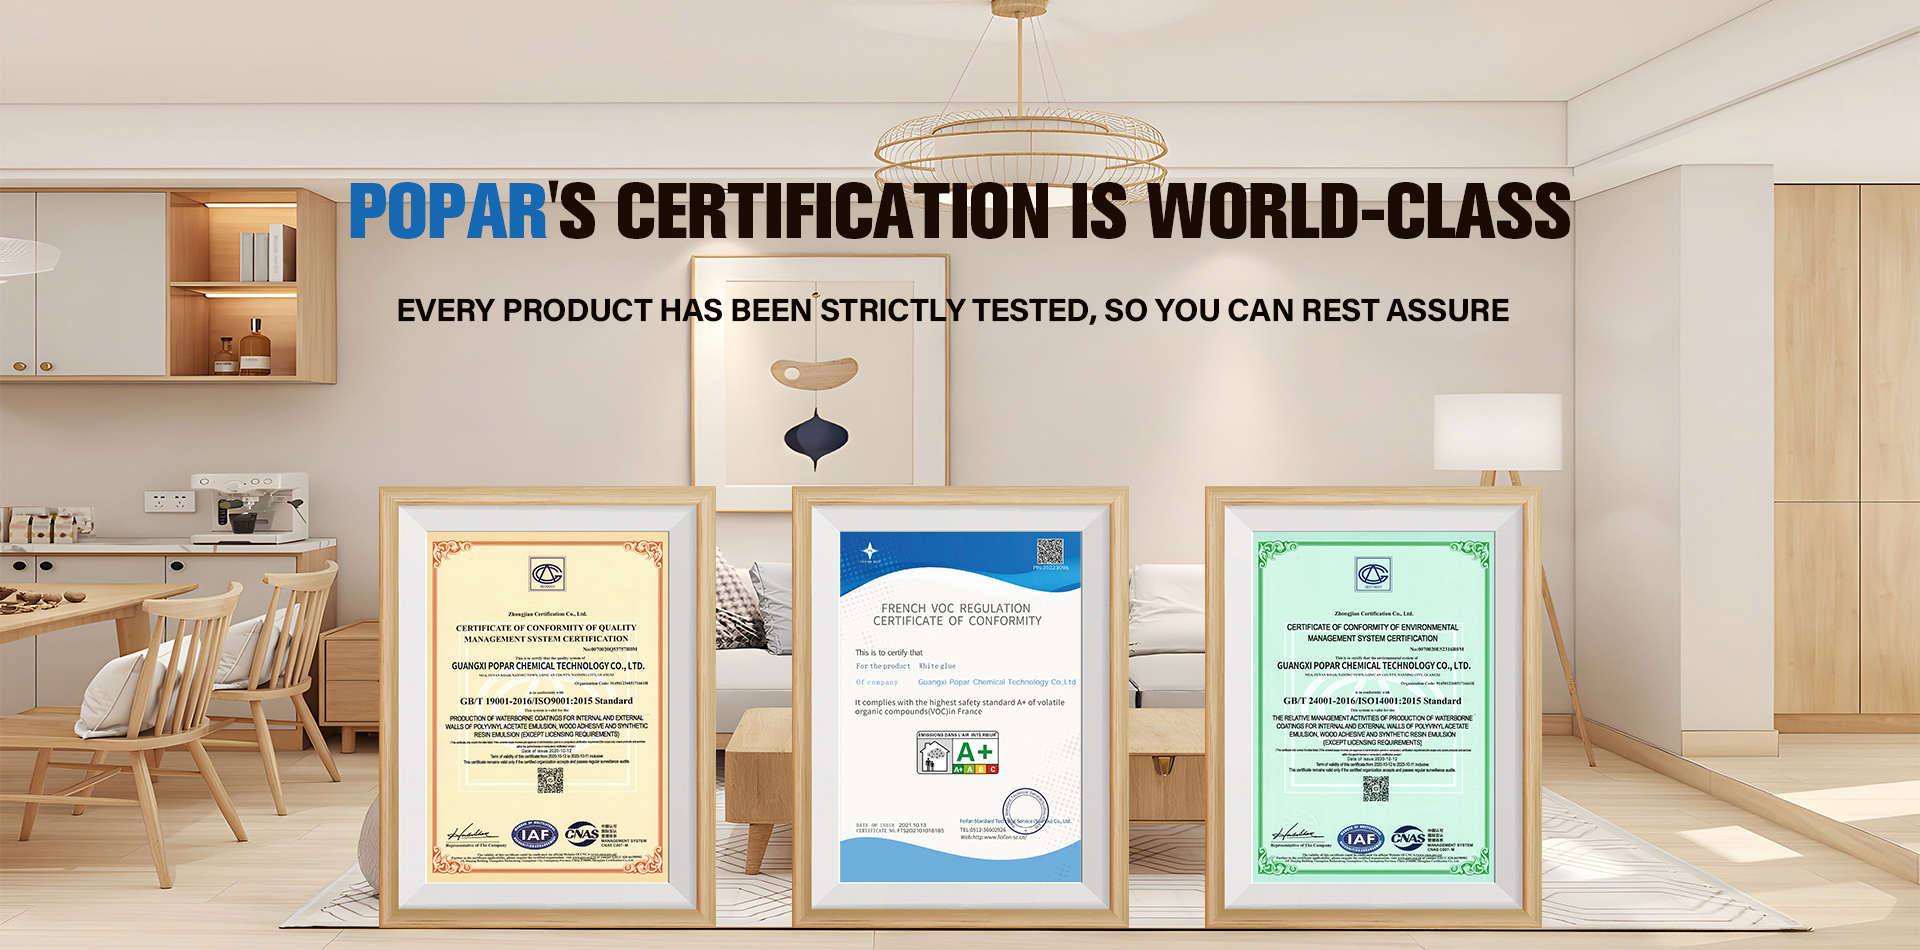 La certificazione Popar è di livello mondiale